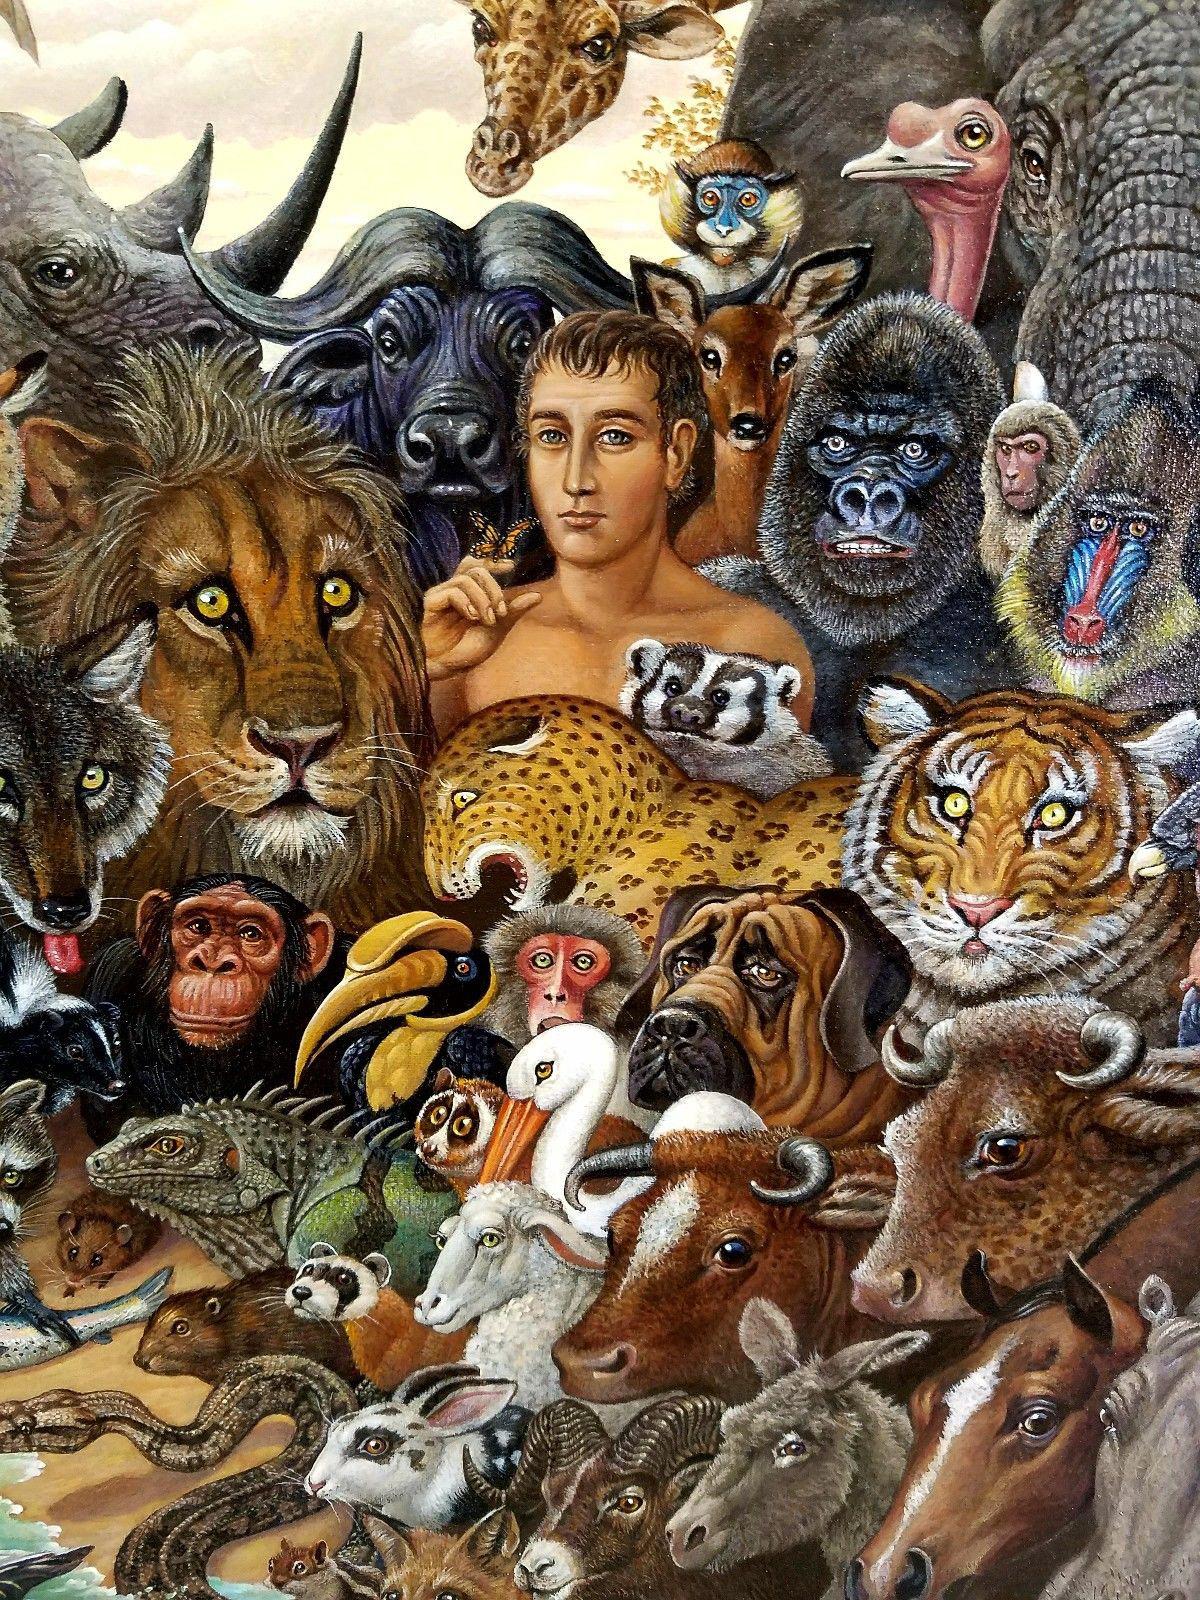 Tierreich, Zebra, Büffel, Löwe, Giraffen, Elefant, Affen, Tiger  Gorilla (Braun), Animal Painting, von Richard Hess